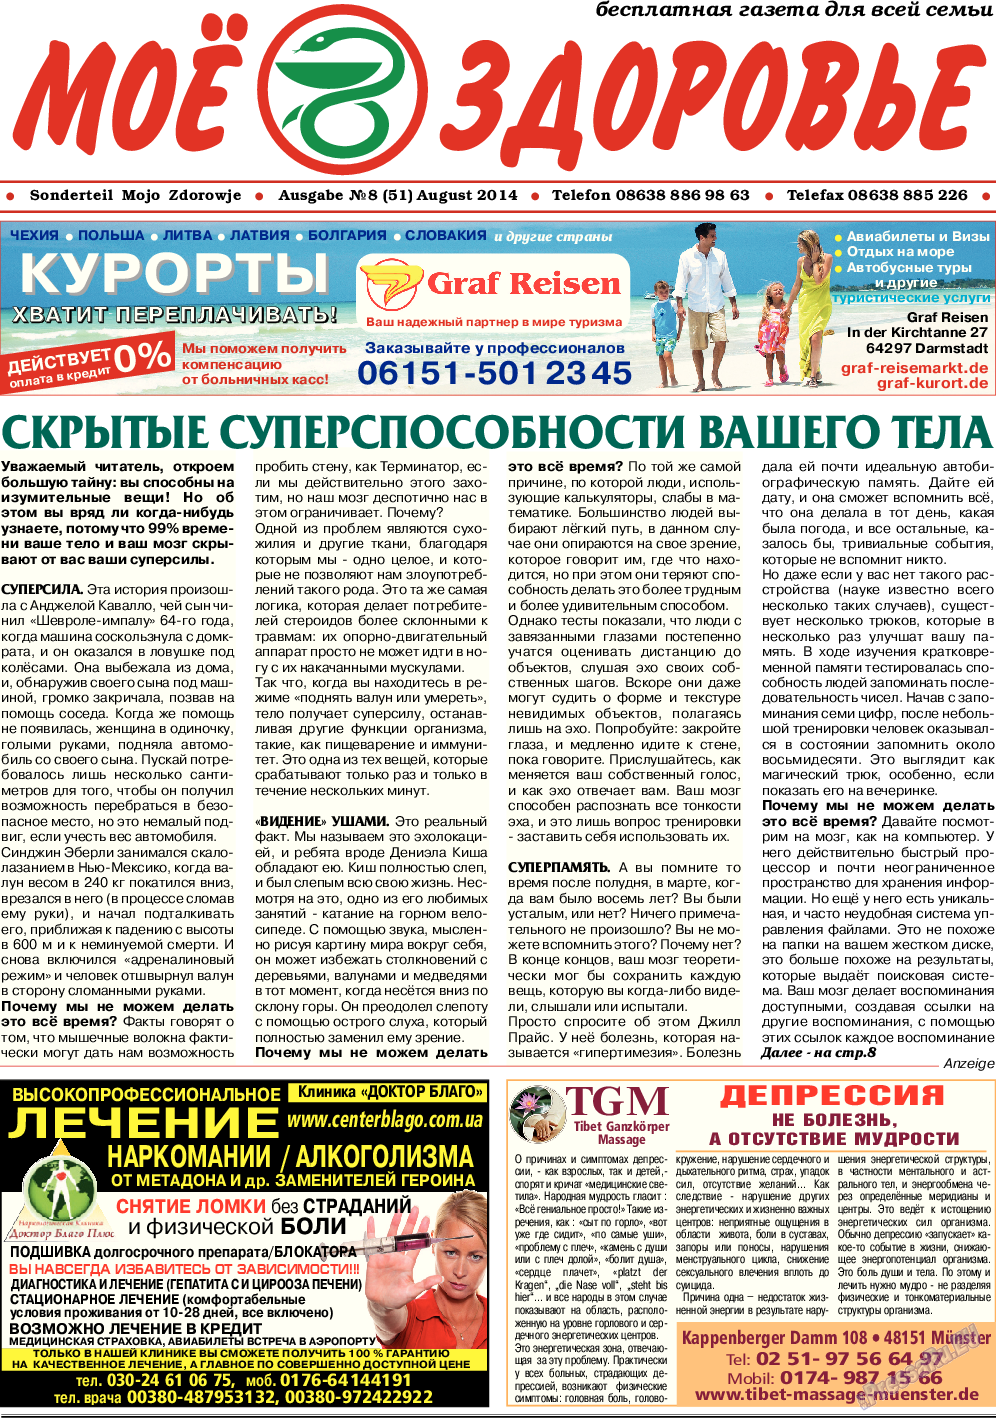 Кругозор (газета). 2014 год, номер 8, стр. 7